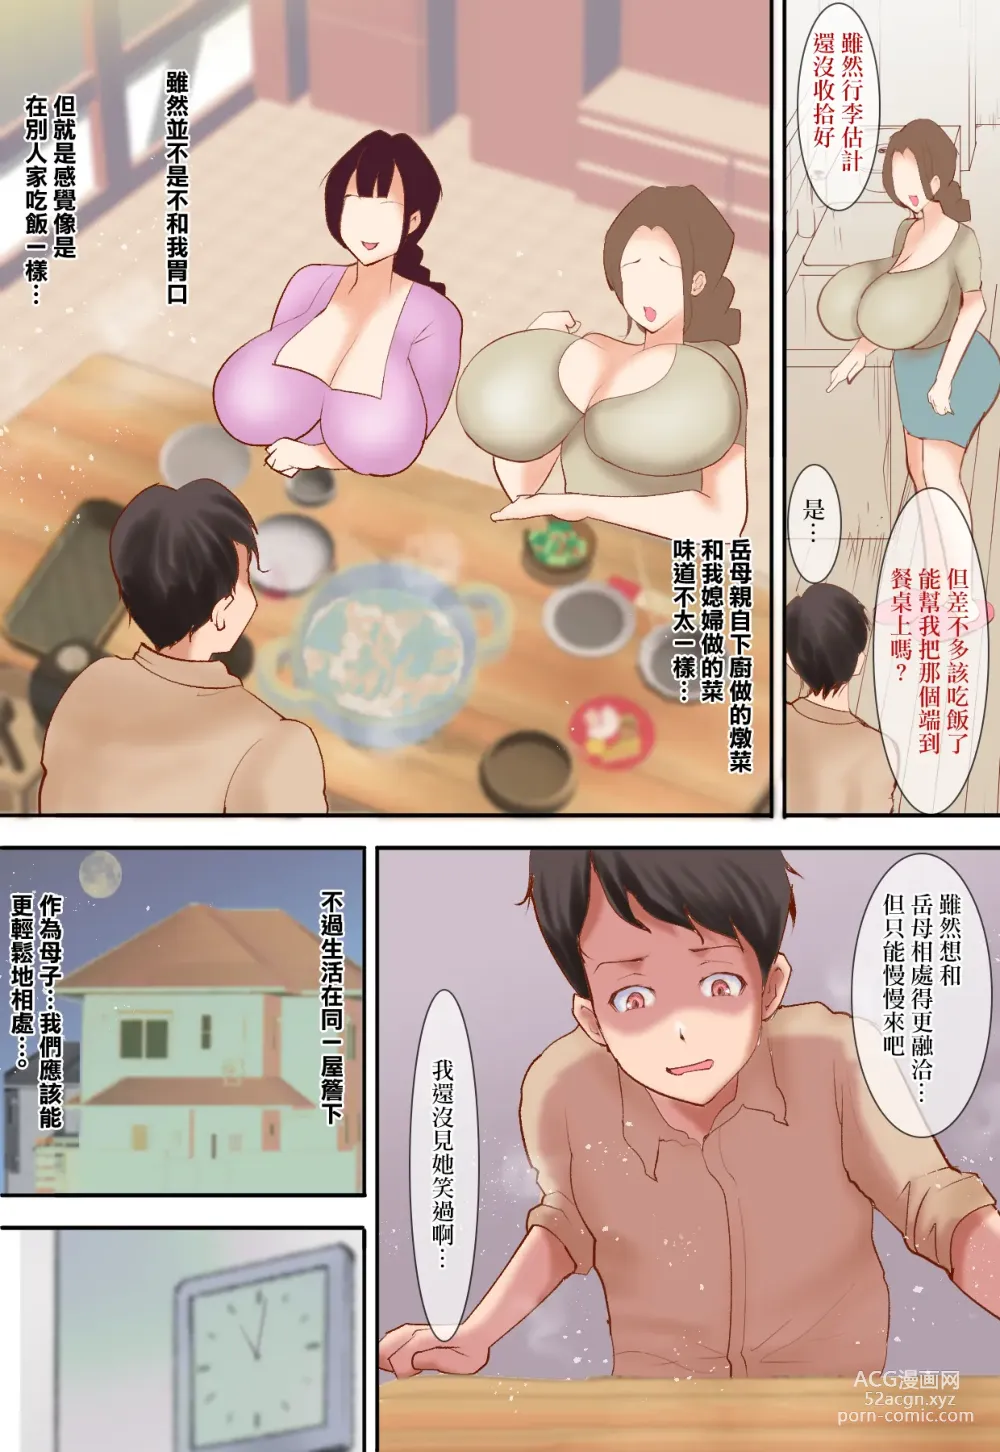 Page 4 of doujinshi 嫁のお義母さんが、毎晩ボクを求めてくる 〜審判の日〜